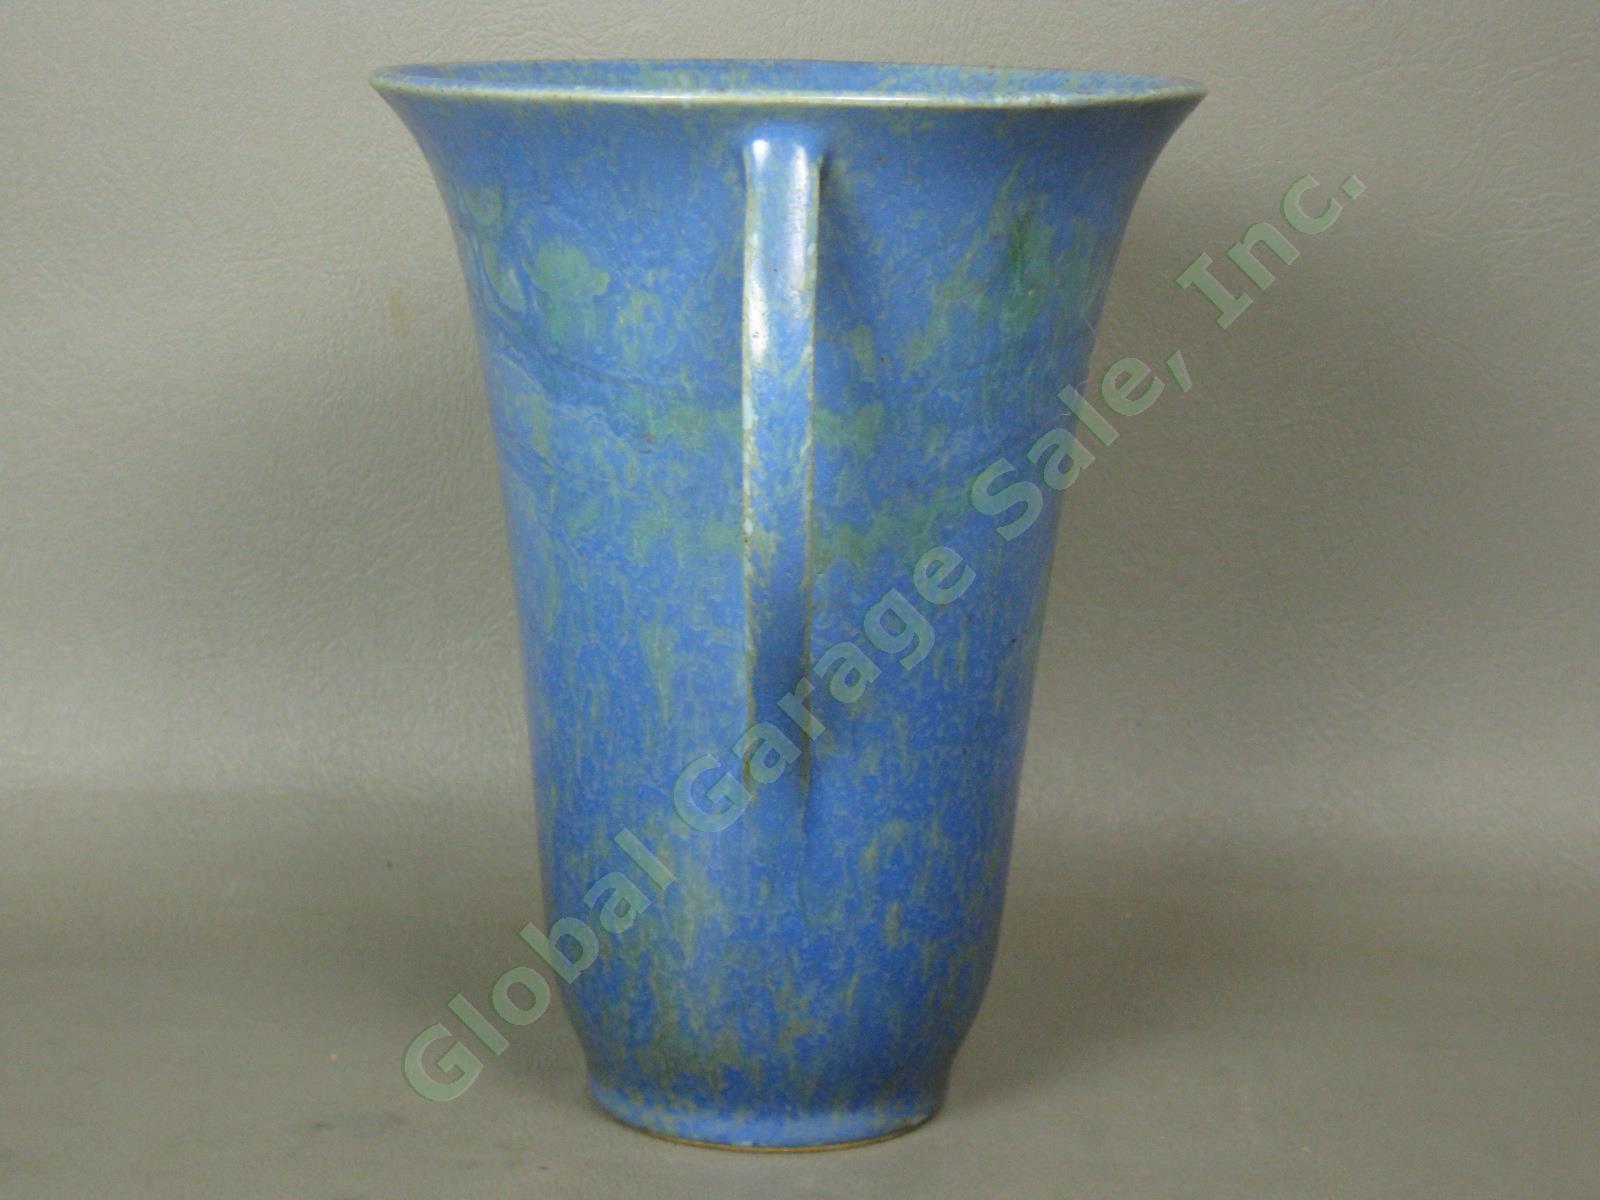 Vintage 1920s-1930s Roseville Pottery Mottled Blue Green Vase Paper Label NO RES 1